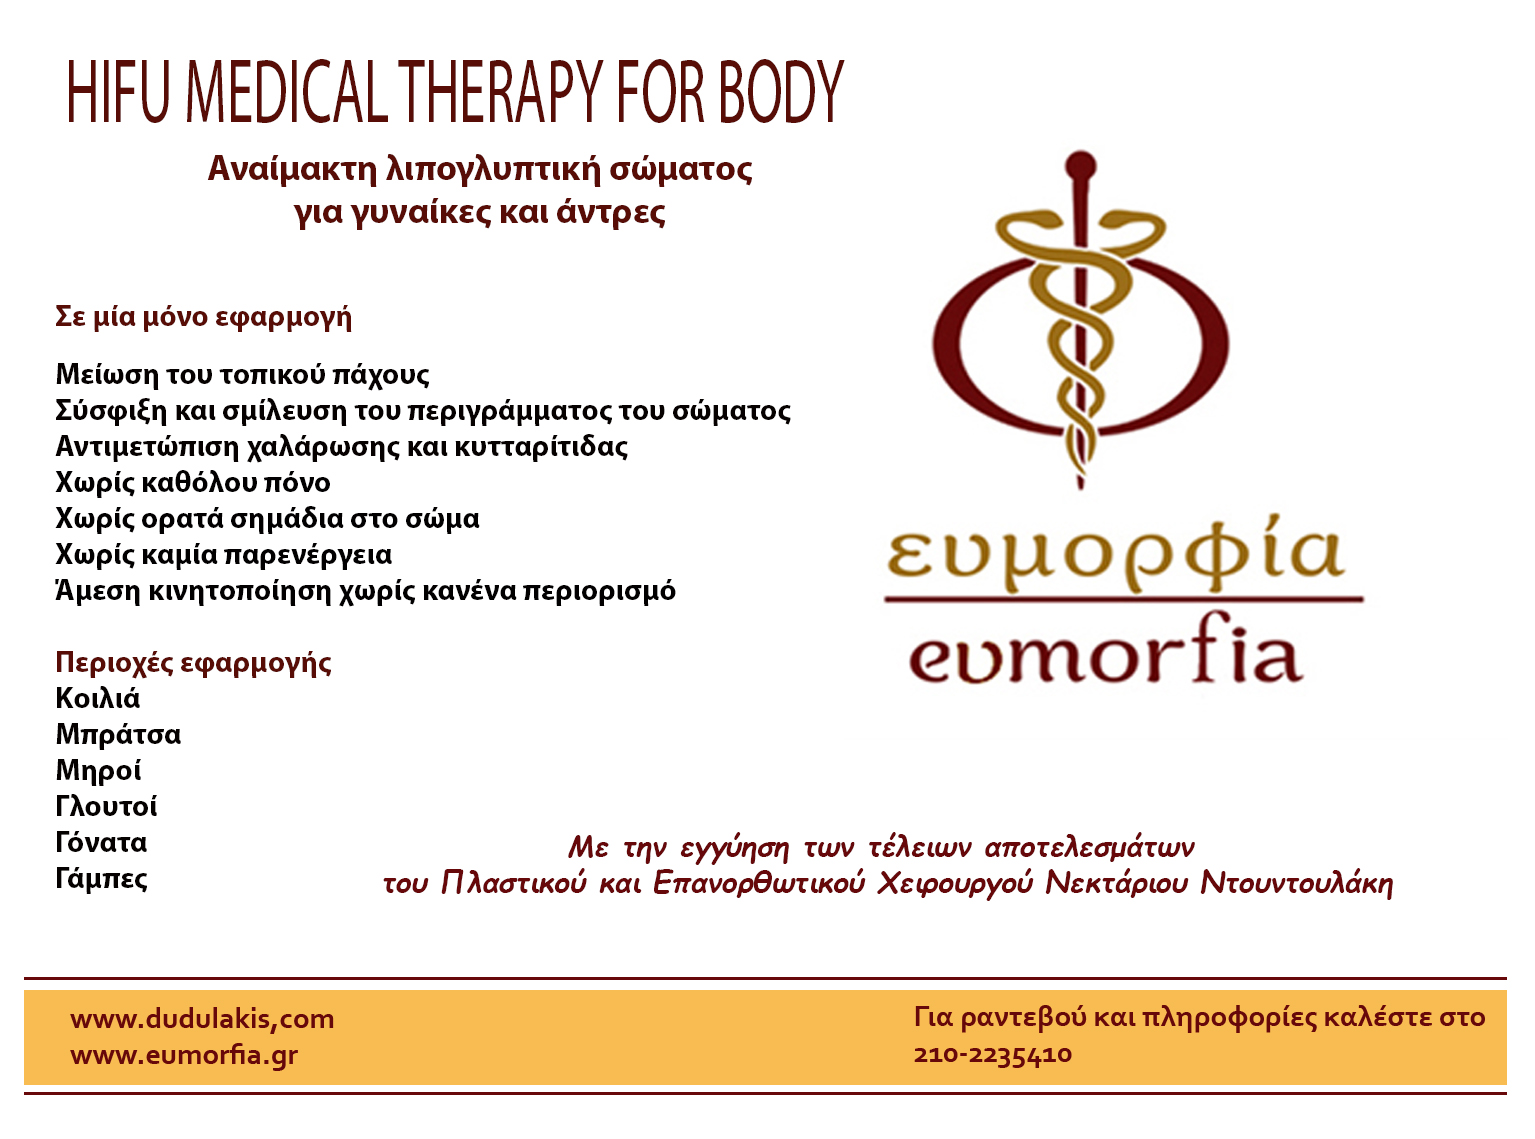 HIFU BODY MEDICAL THREAPY- Μη επεμβατική λιπογλυπτική σώματος